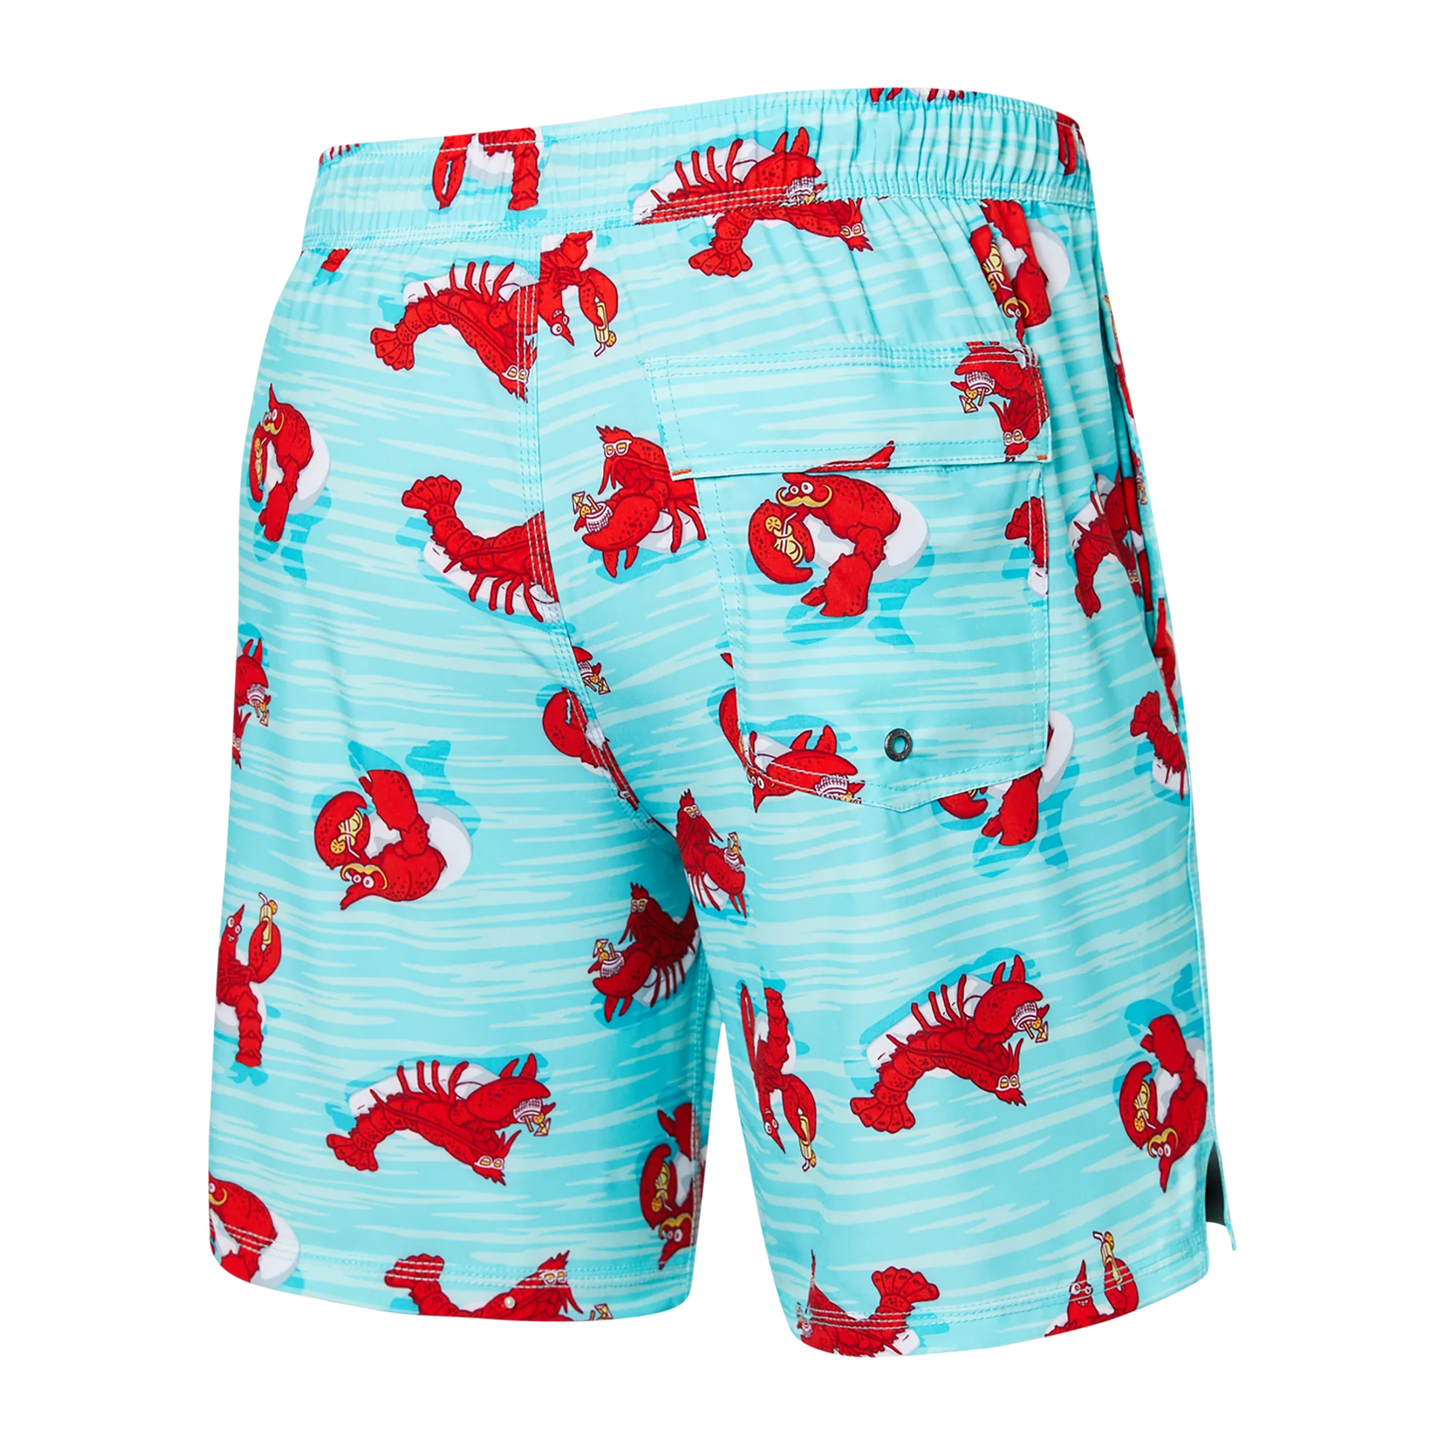 SAXX OH BUOY STRETCH VOLLEY Swim Shorts 7" / Lobster Lounger- Aqua